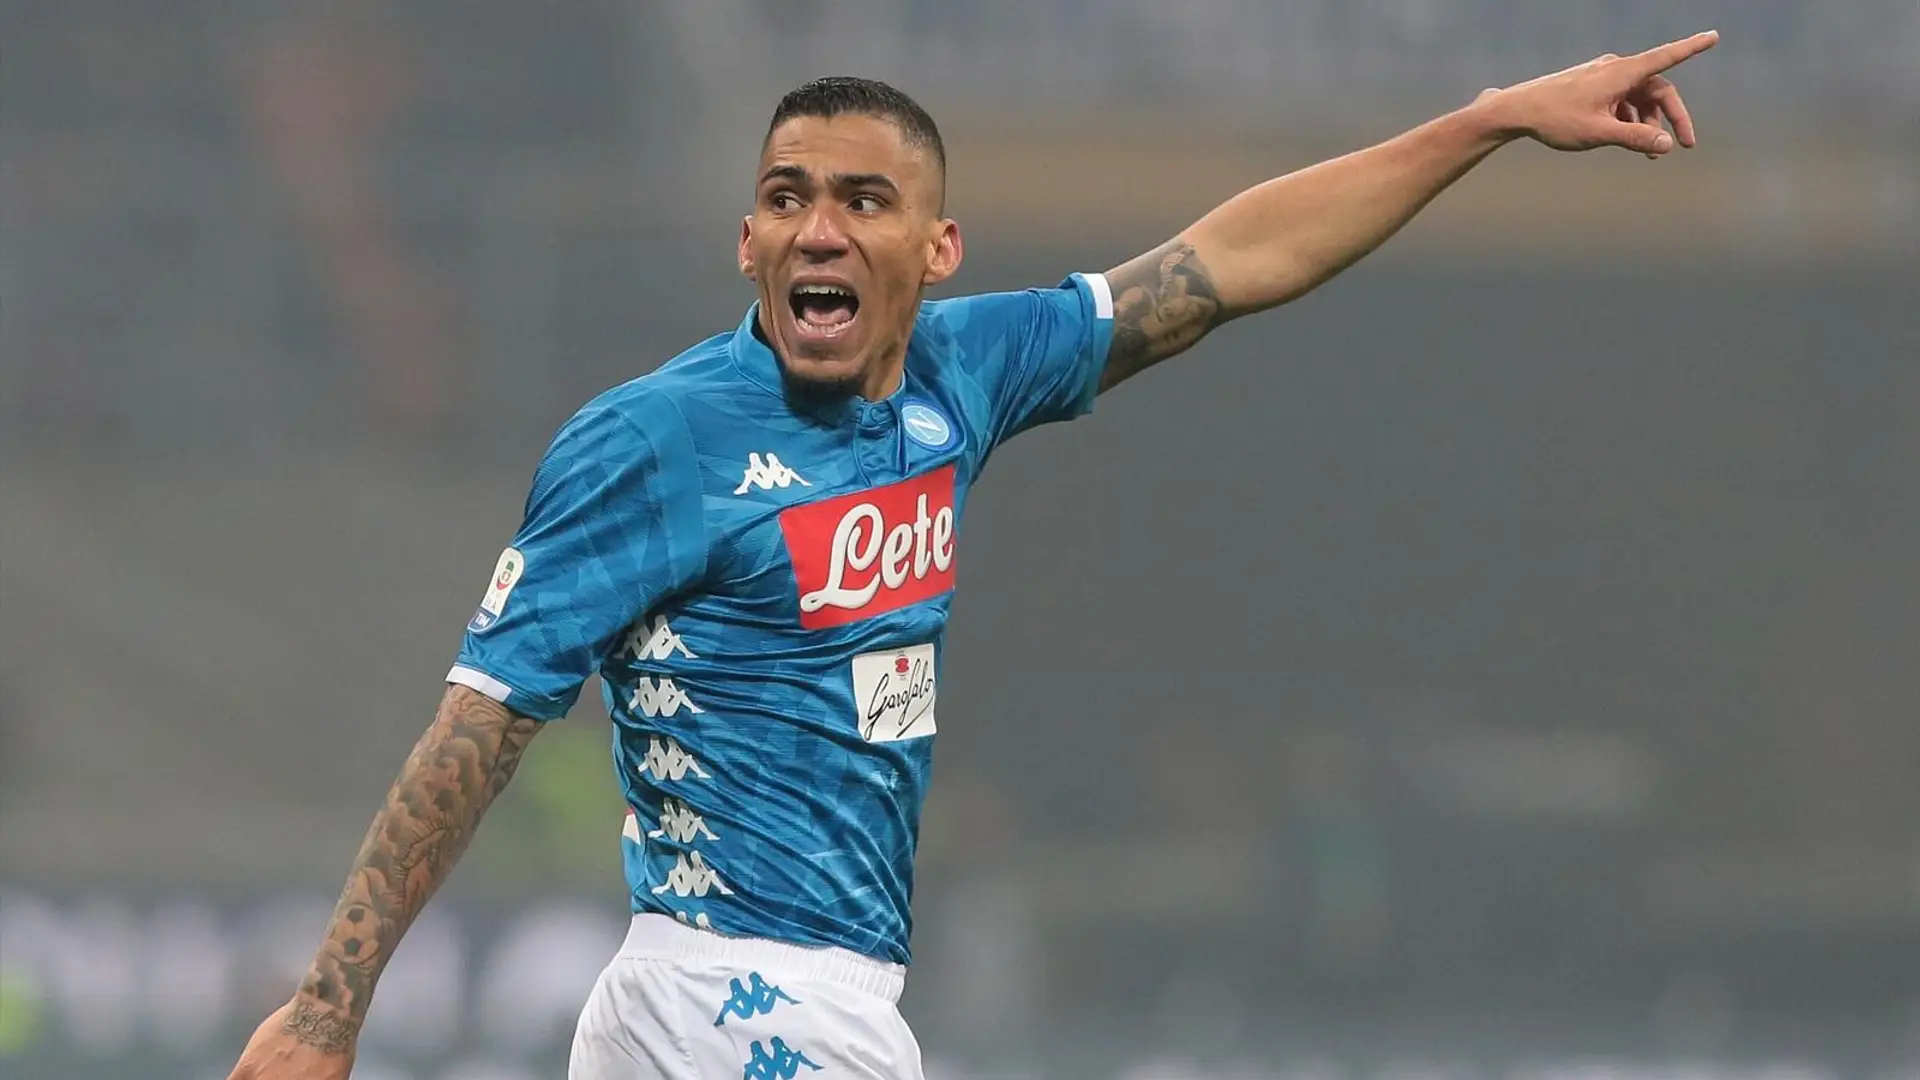 Corriere dello Sport confirme l'intention de Napoli de vendre Allan cet été- le PSG et Everton cités comme principaux prétendants